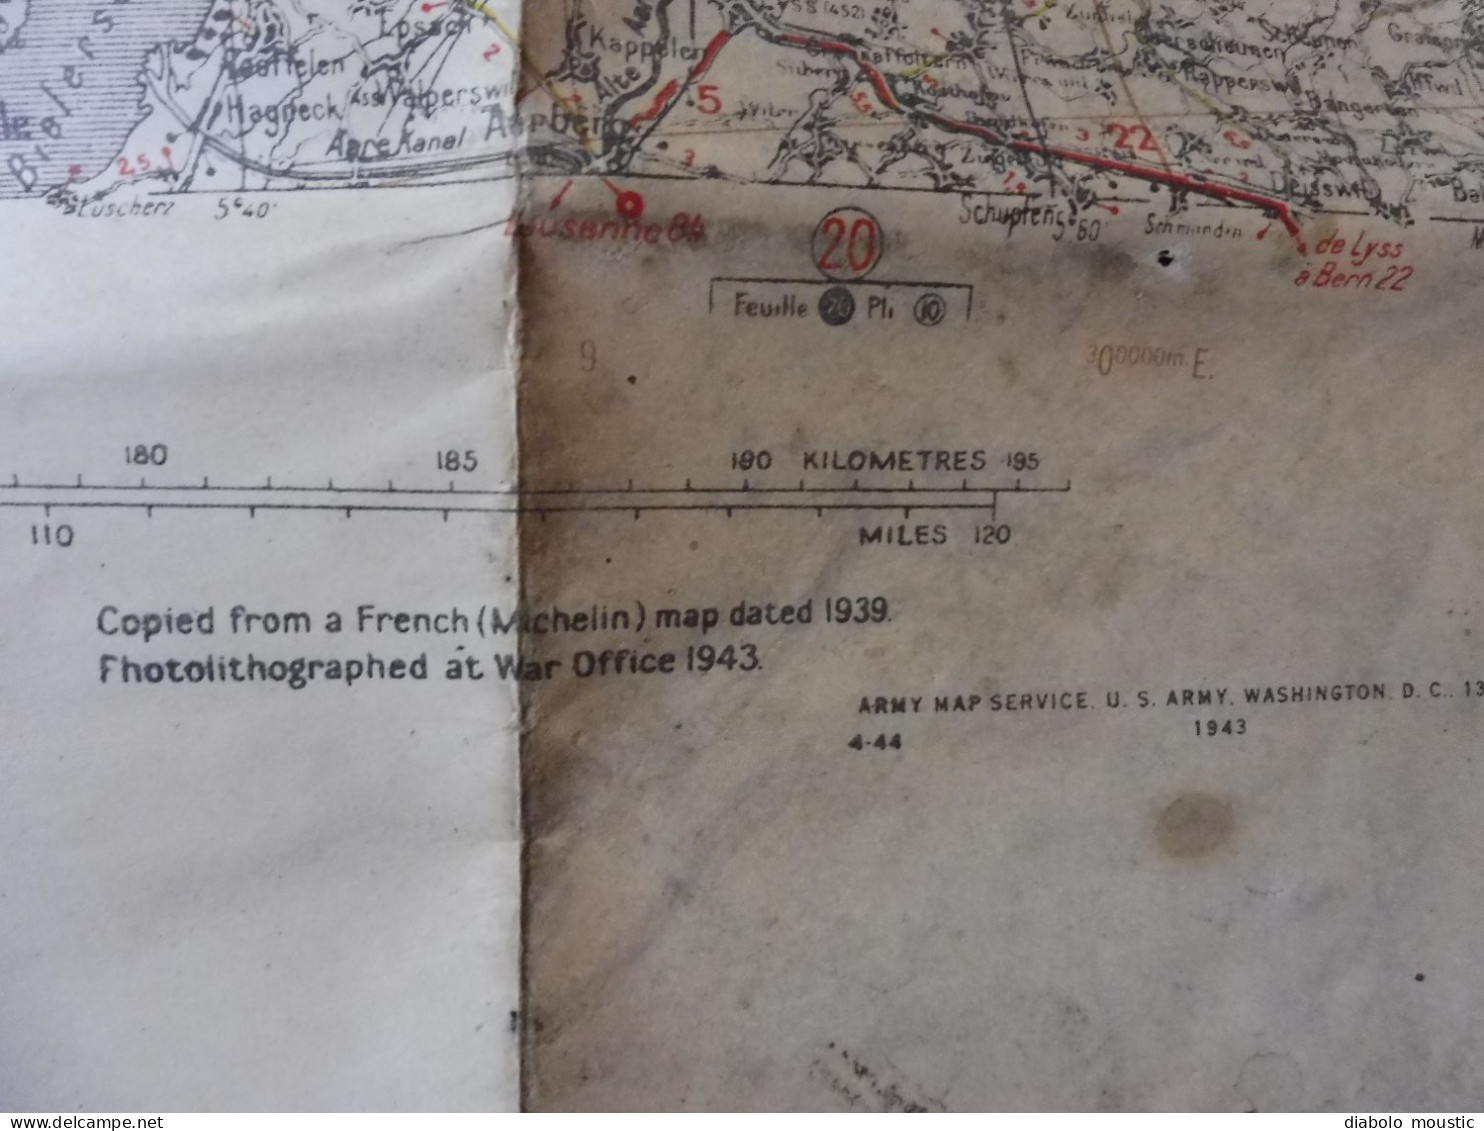 1943  Carte de guerre DIJON - MULHOUSE  firts edition published by War Office  Dim. 116cm x 70cm